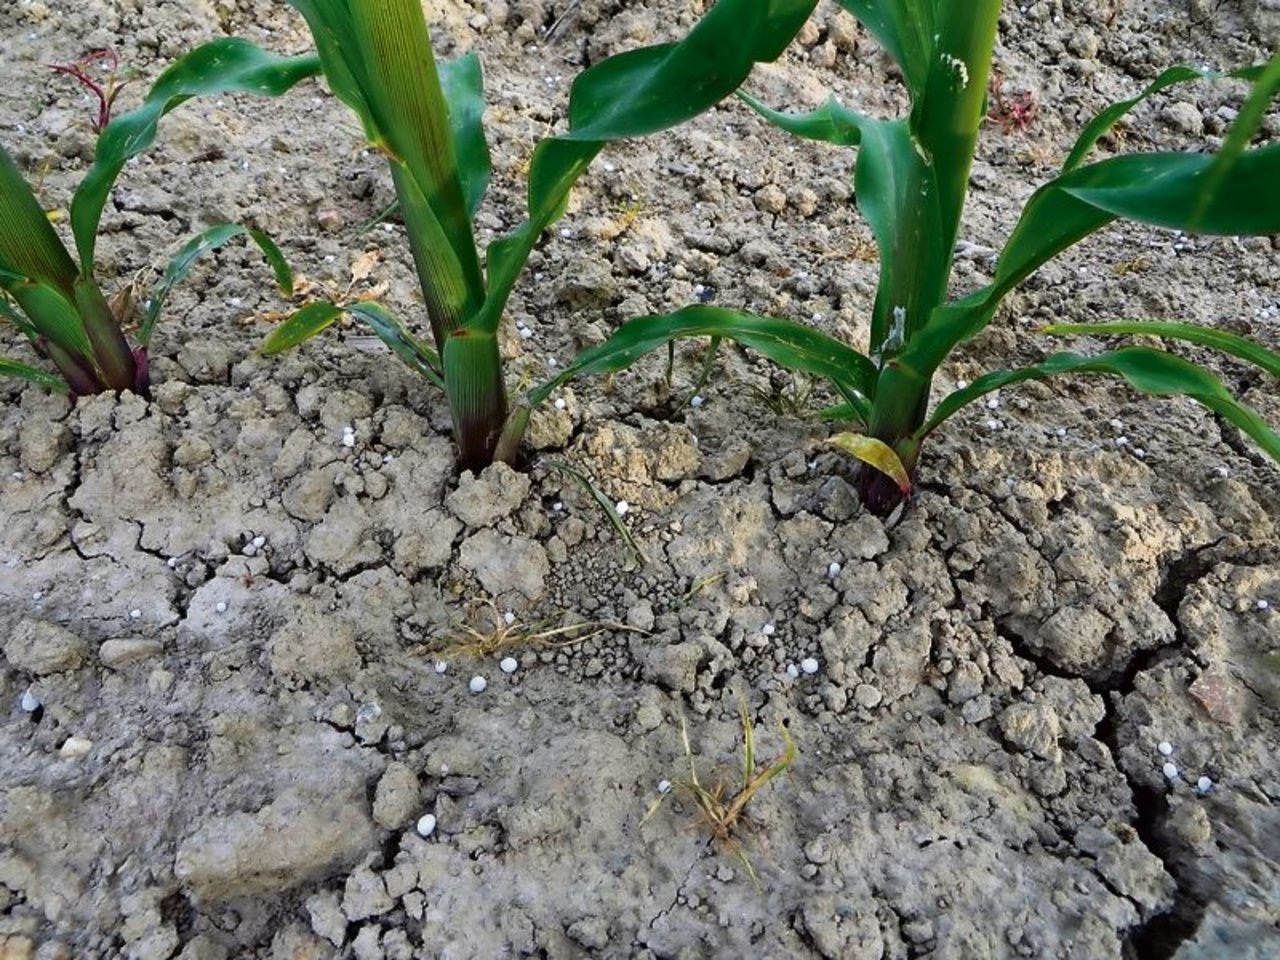 Harnstoffdüngung im Mais: Ein Stickstoffverlust durch Ammoniakverflüchtigung ist hier absehbar. (Bild Chrirstof Lüthi)